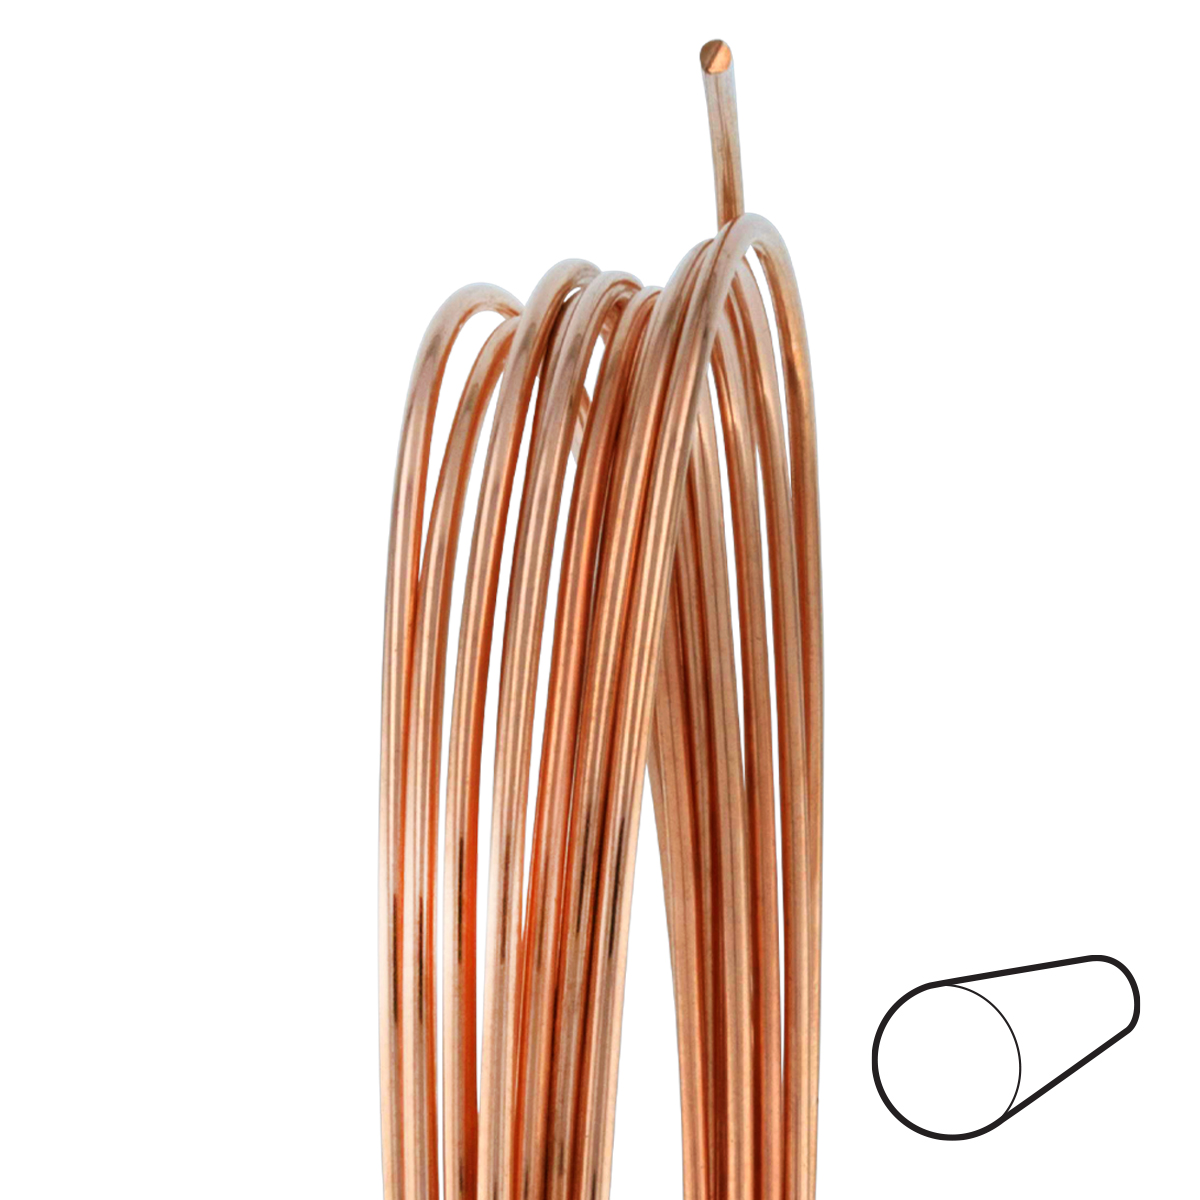 16 Gauge Round Dead Soft Copper Wire: Wire Jewelry, Wire Wrap Tutorials